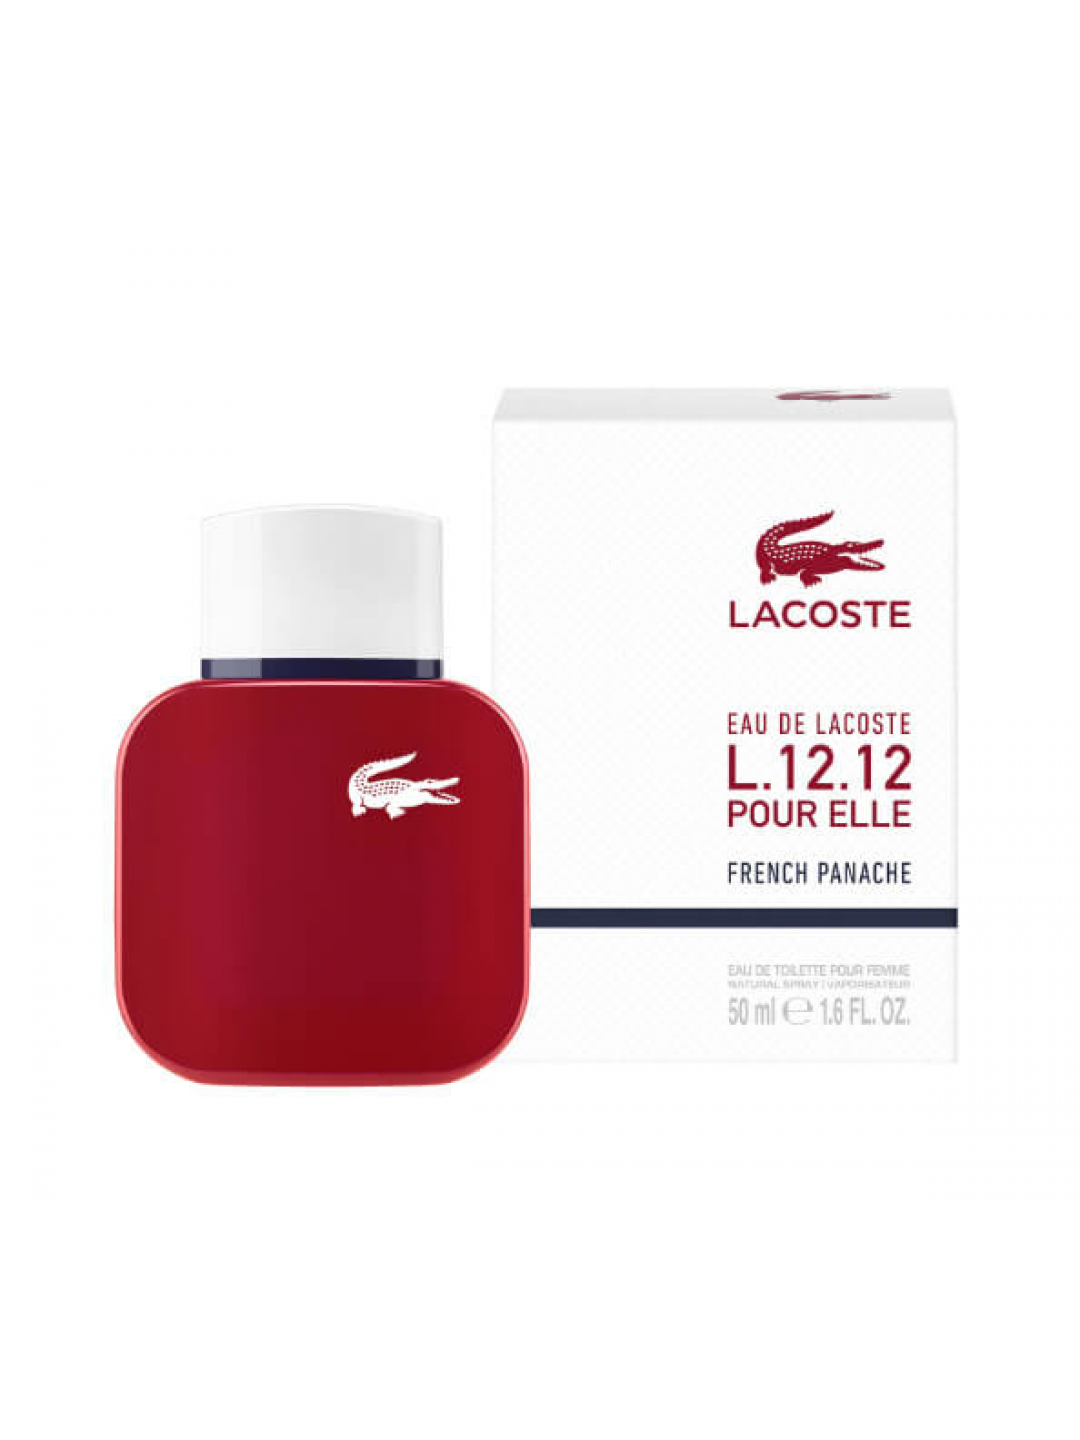 Lacoste Eau De Lacoste L 12 12 Pour Elle French Panache – EDT 50 ml